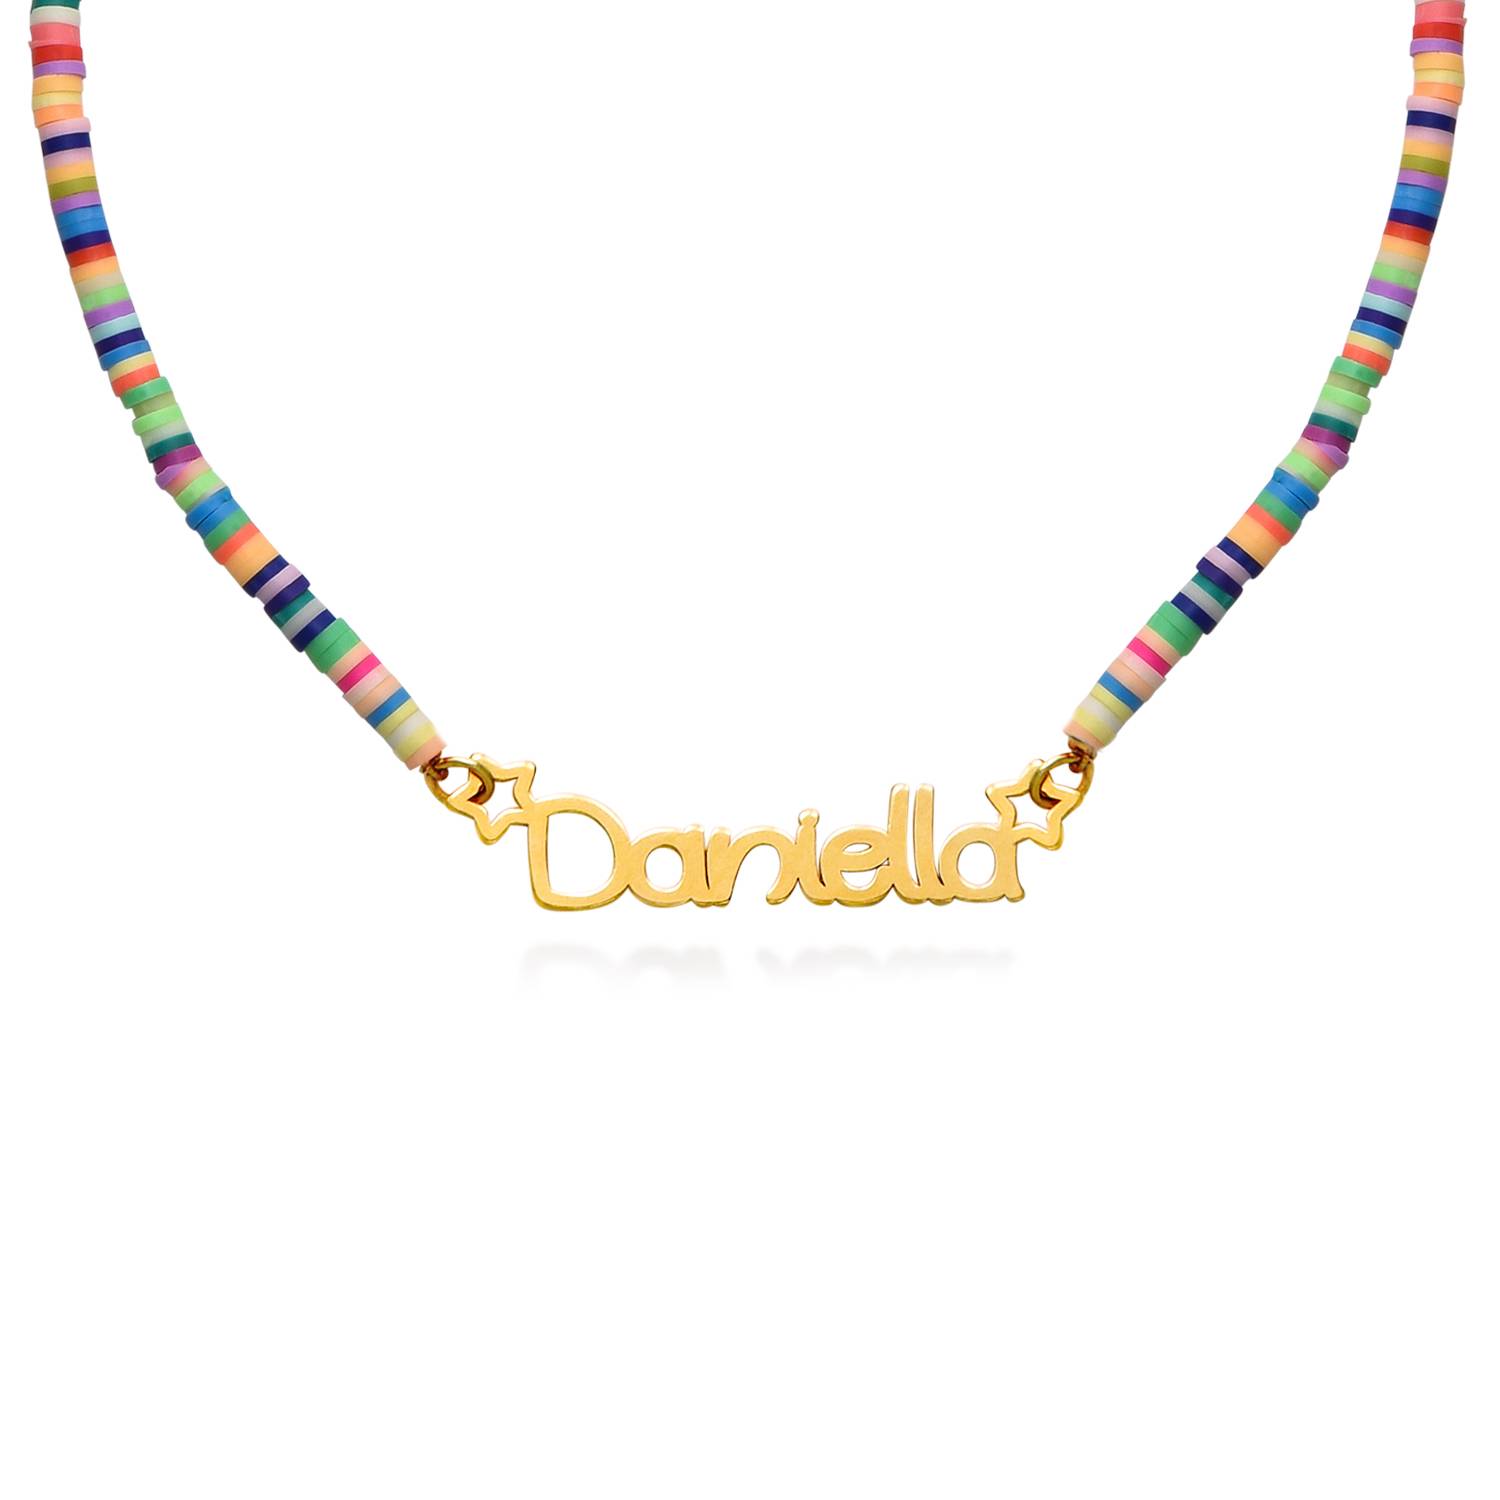 Regenbogenkette für Mädchen - 750er Gold-Vermeil-5 Produktfoto